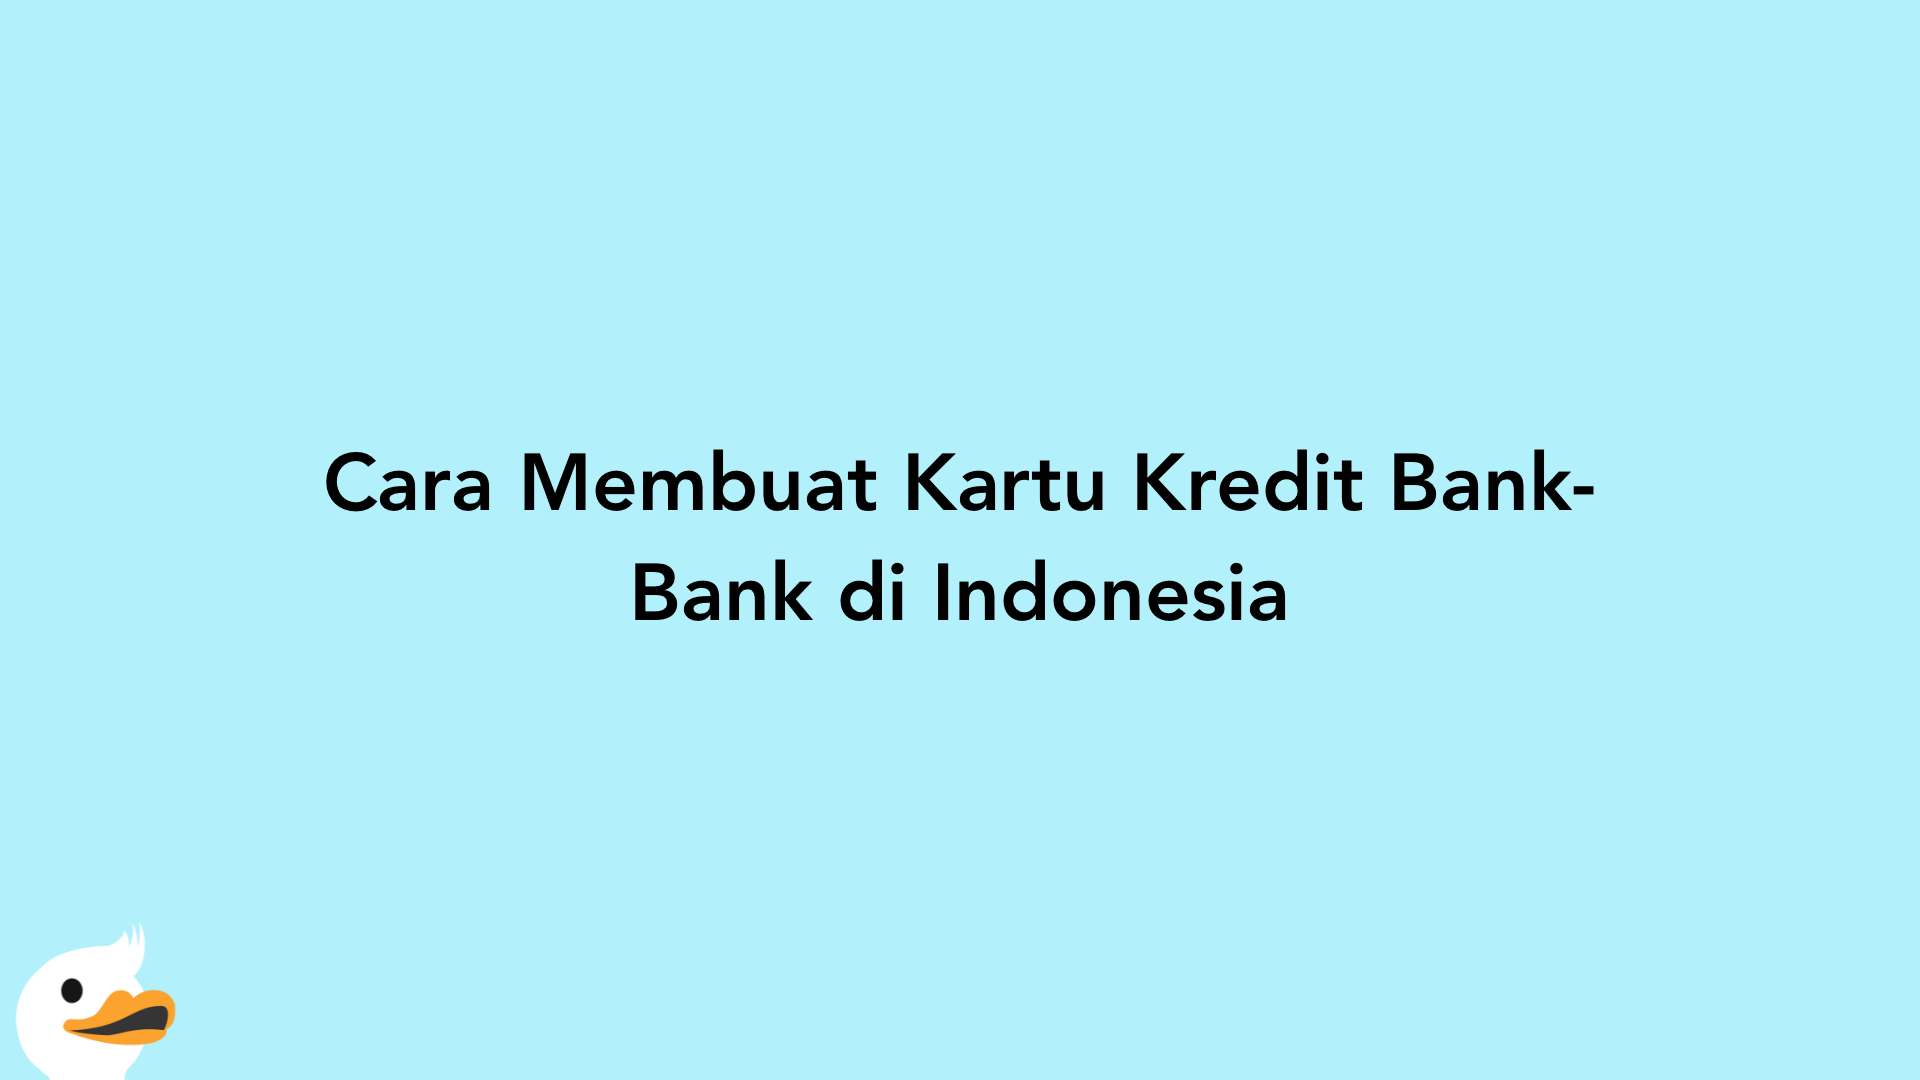 Cara Membuat Kartu Kredit Bank-Bank di Indonesia